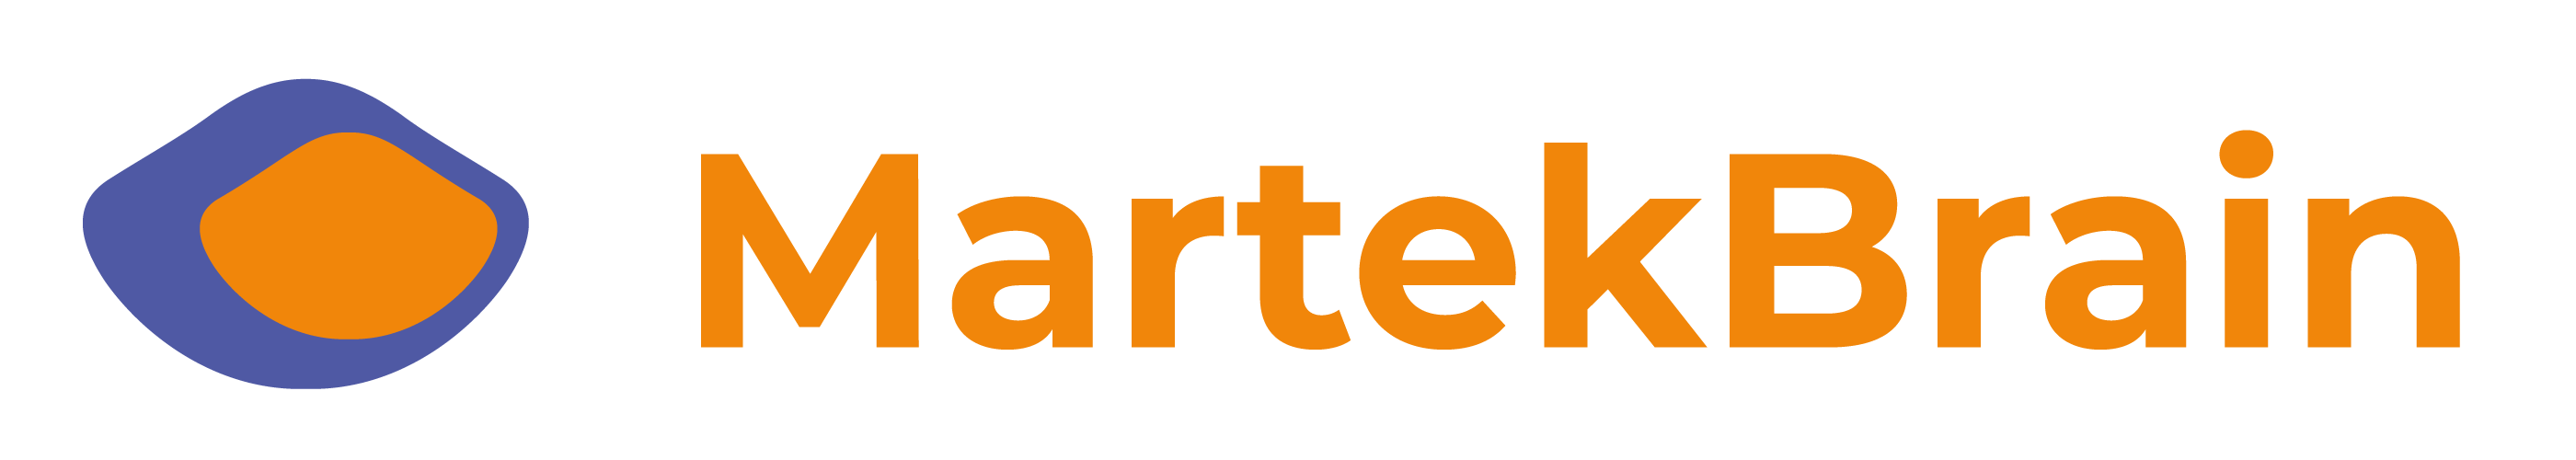 Logotipo MartekBrain